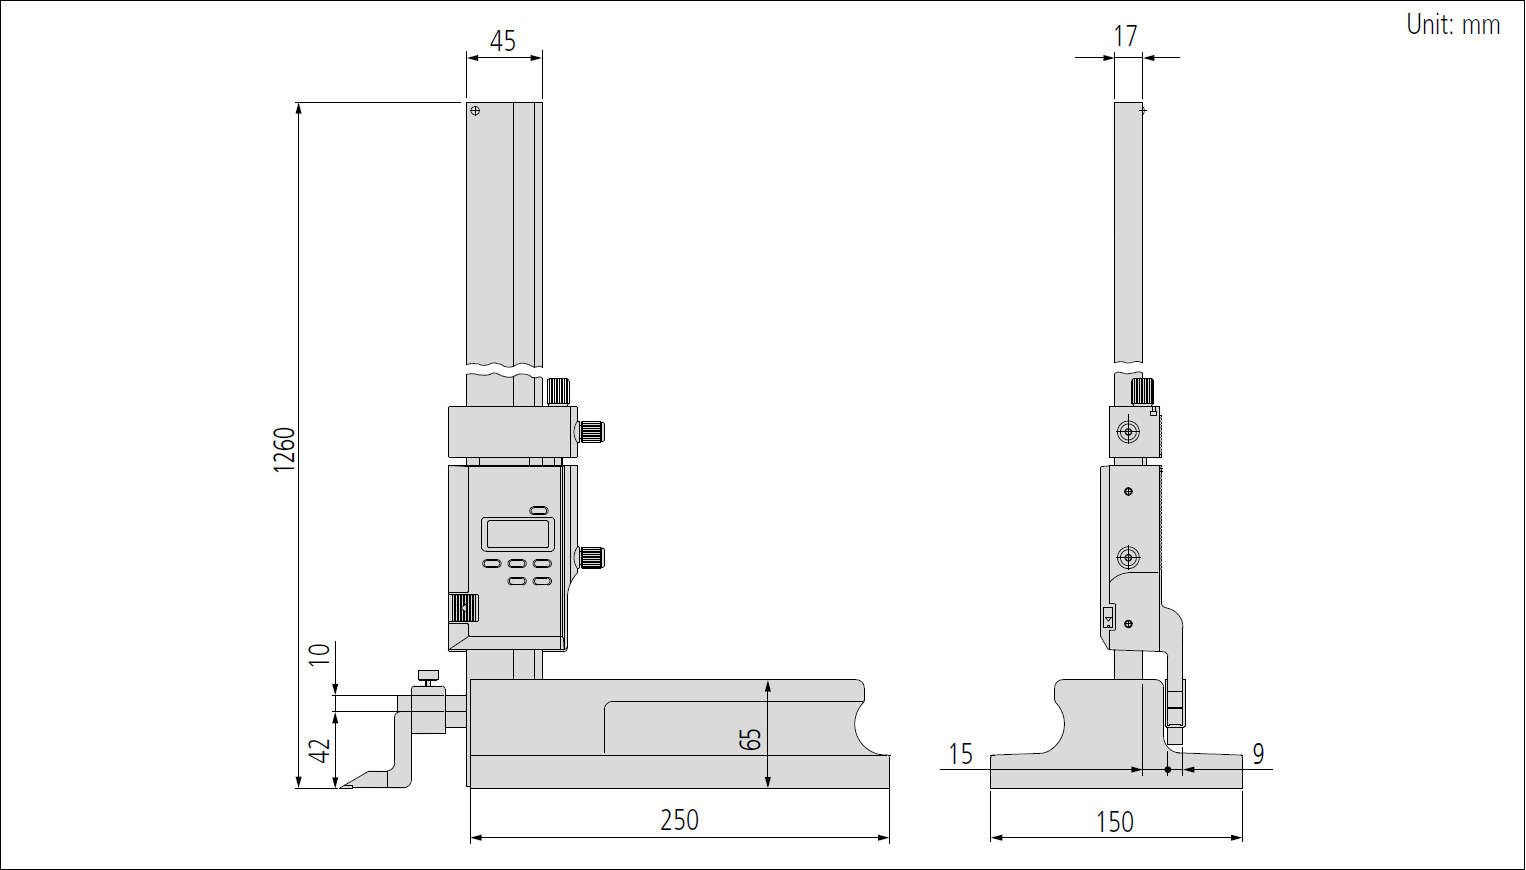 Mitutoyo series 570 digimatic height gauge dimensions.